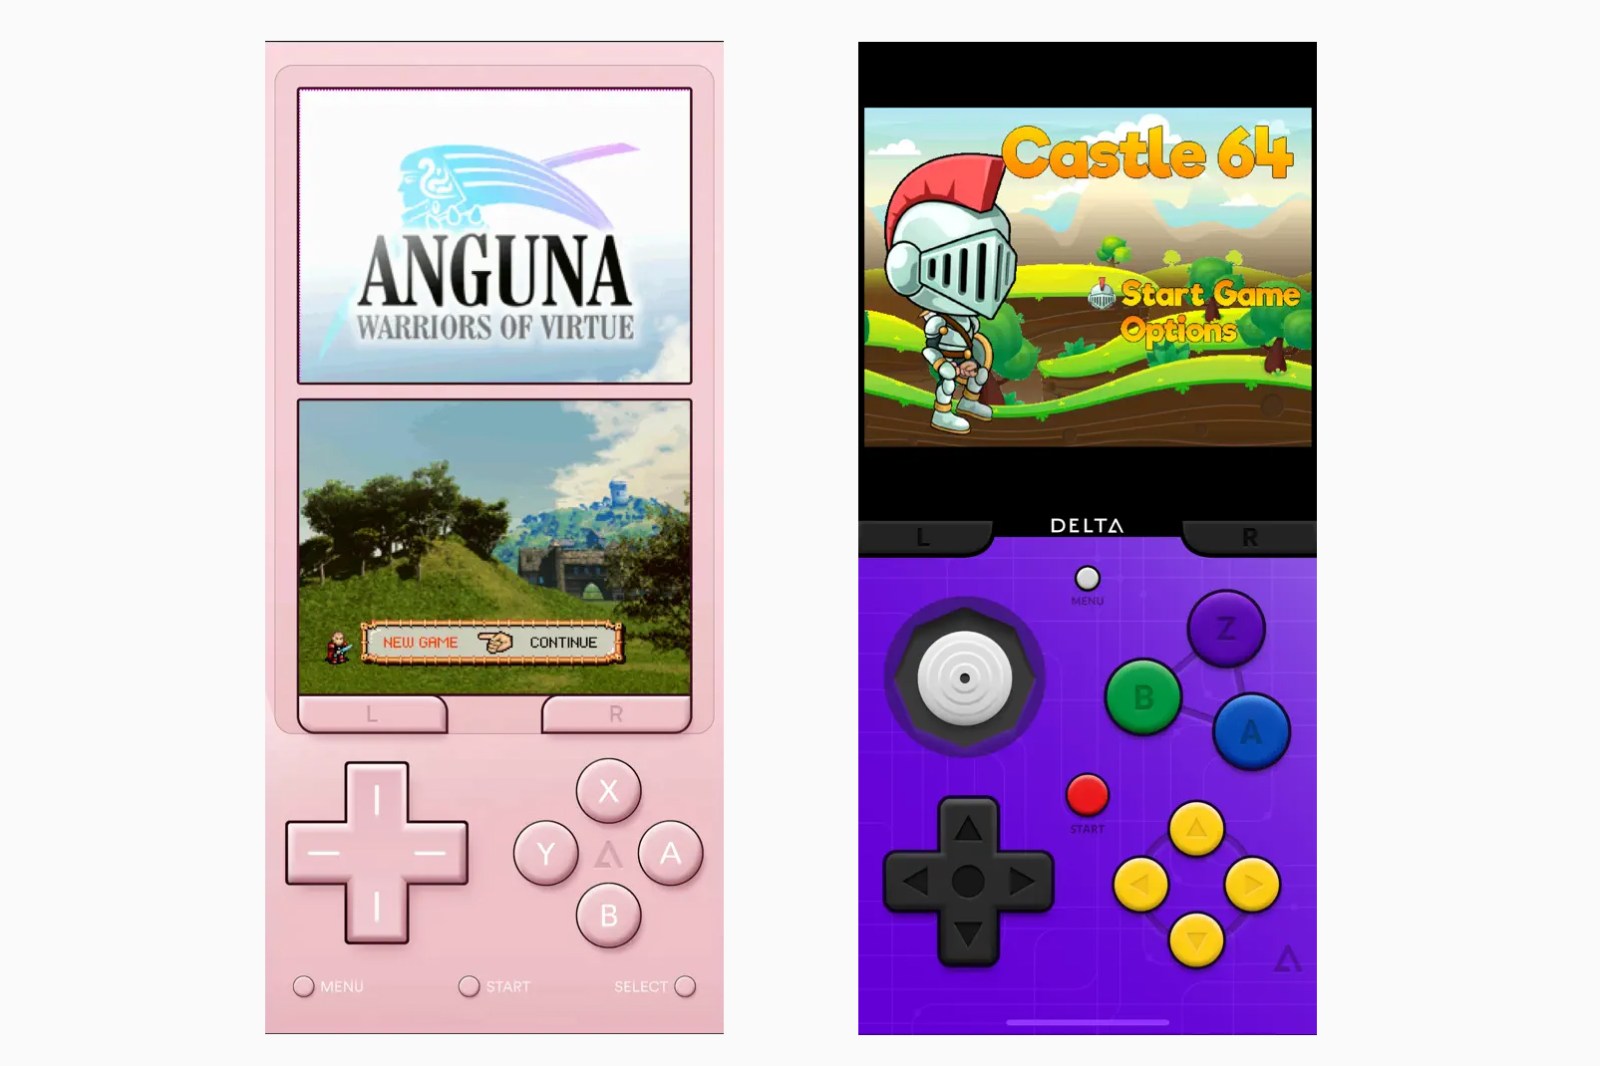 Эмуляторы ретро-игр для iPhone/iPad: как найти и играть в лучшие классические игры